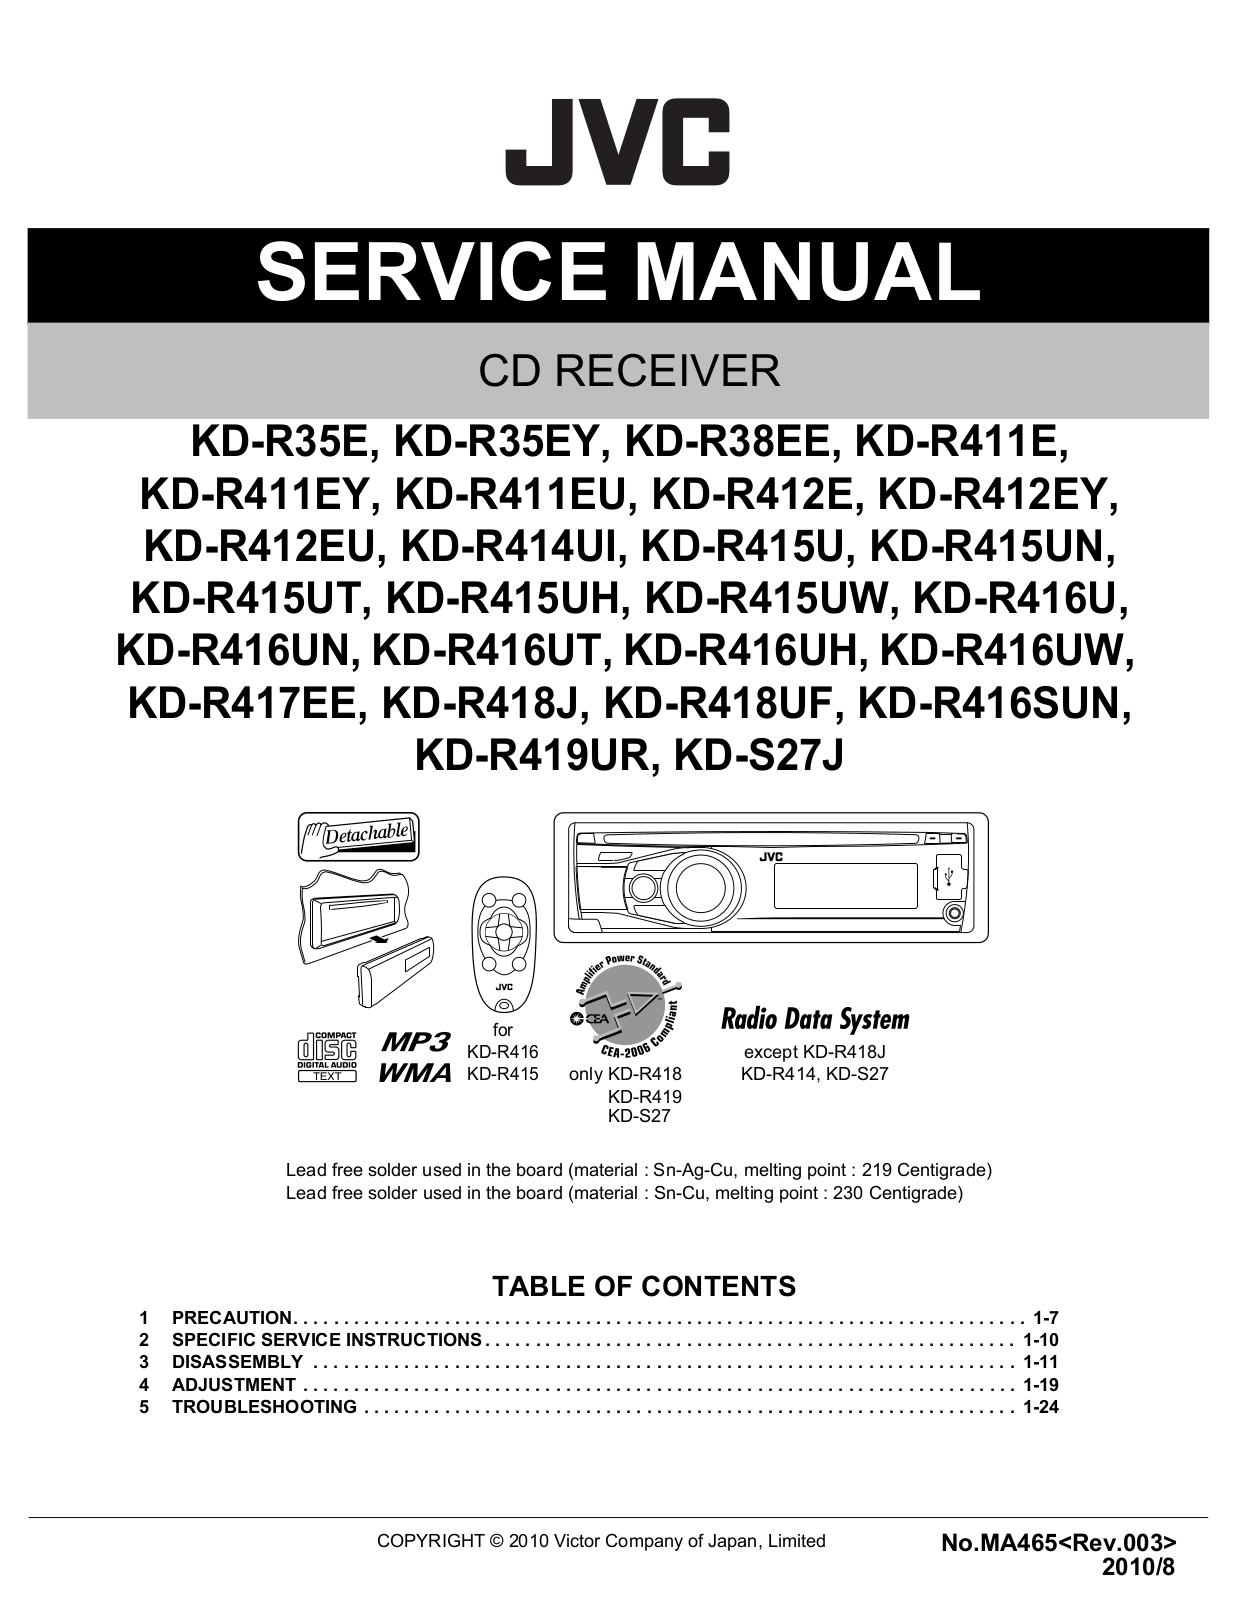 Jvc KD-R35-E Service Manual